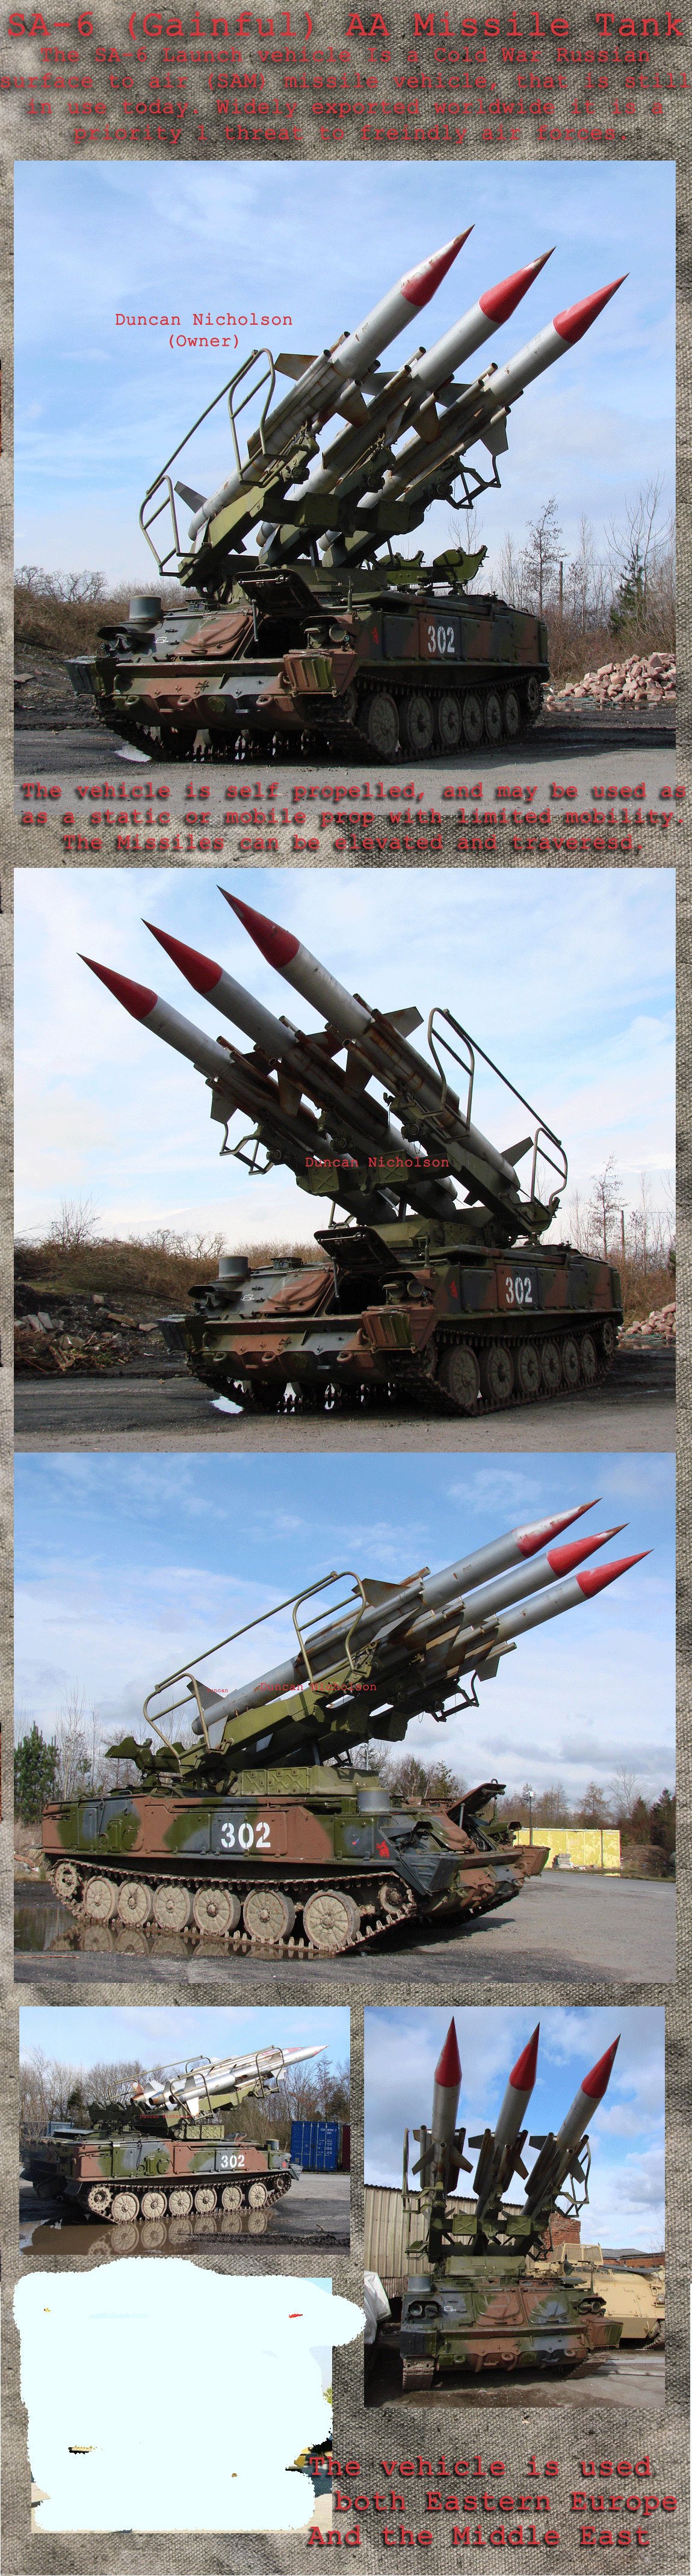 SA6 Rocket Tank for Hire